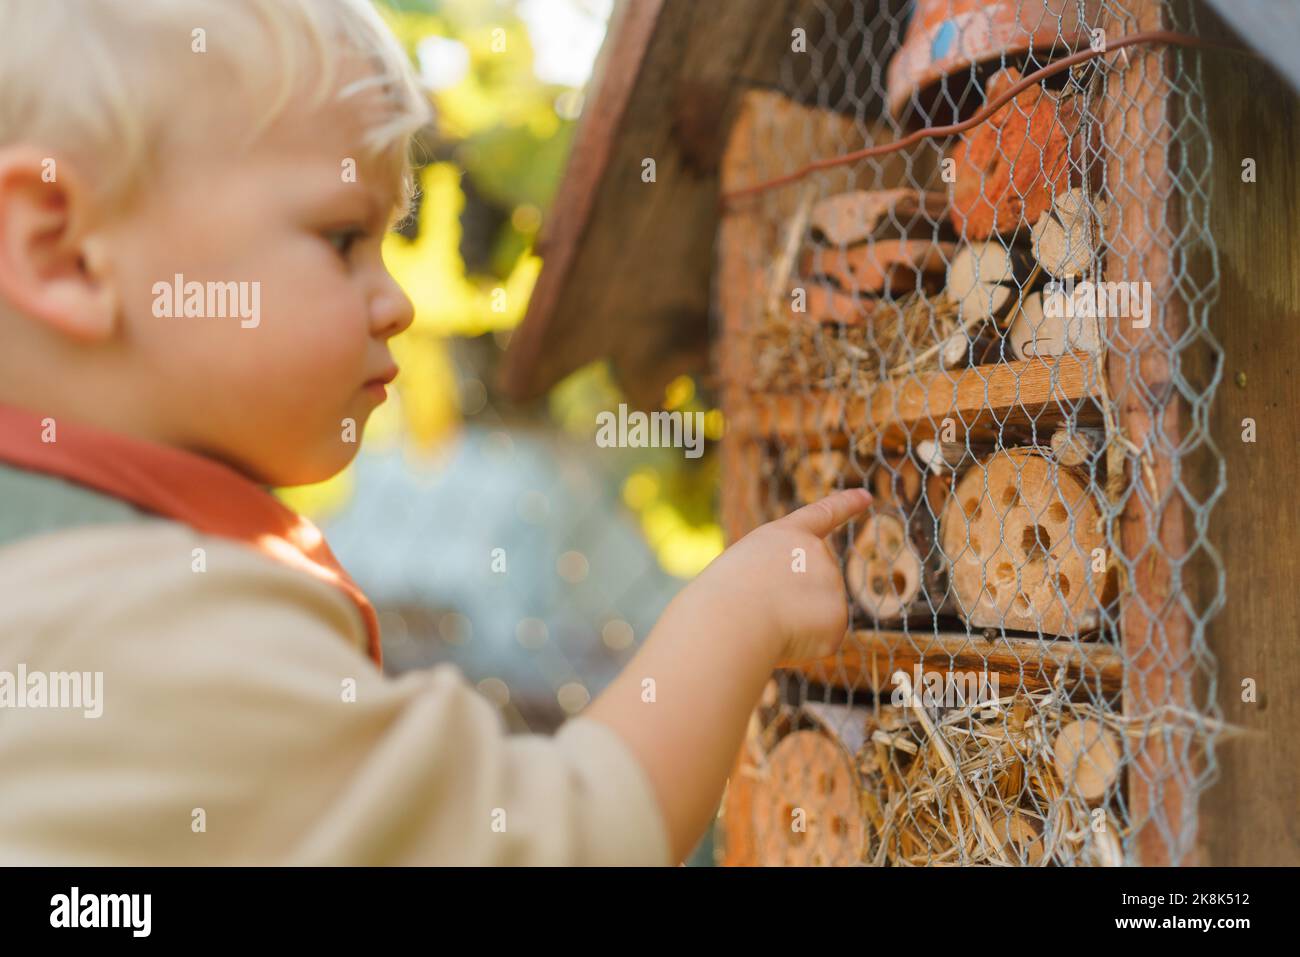 Kleiner Junge, der das Insektenhotel anschaut. Konzept der häuslichen Bildung, Ökologie im Garten und nachhaltiger Lebensstil. Stockfoto